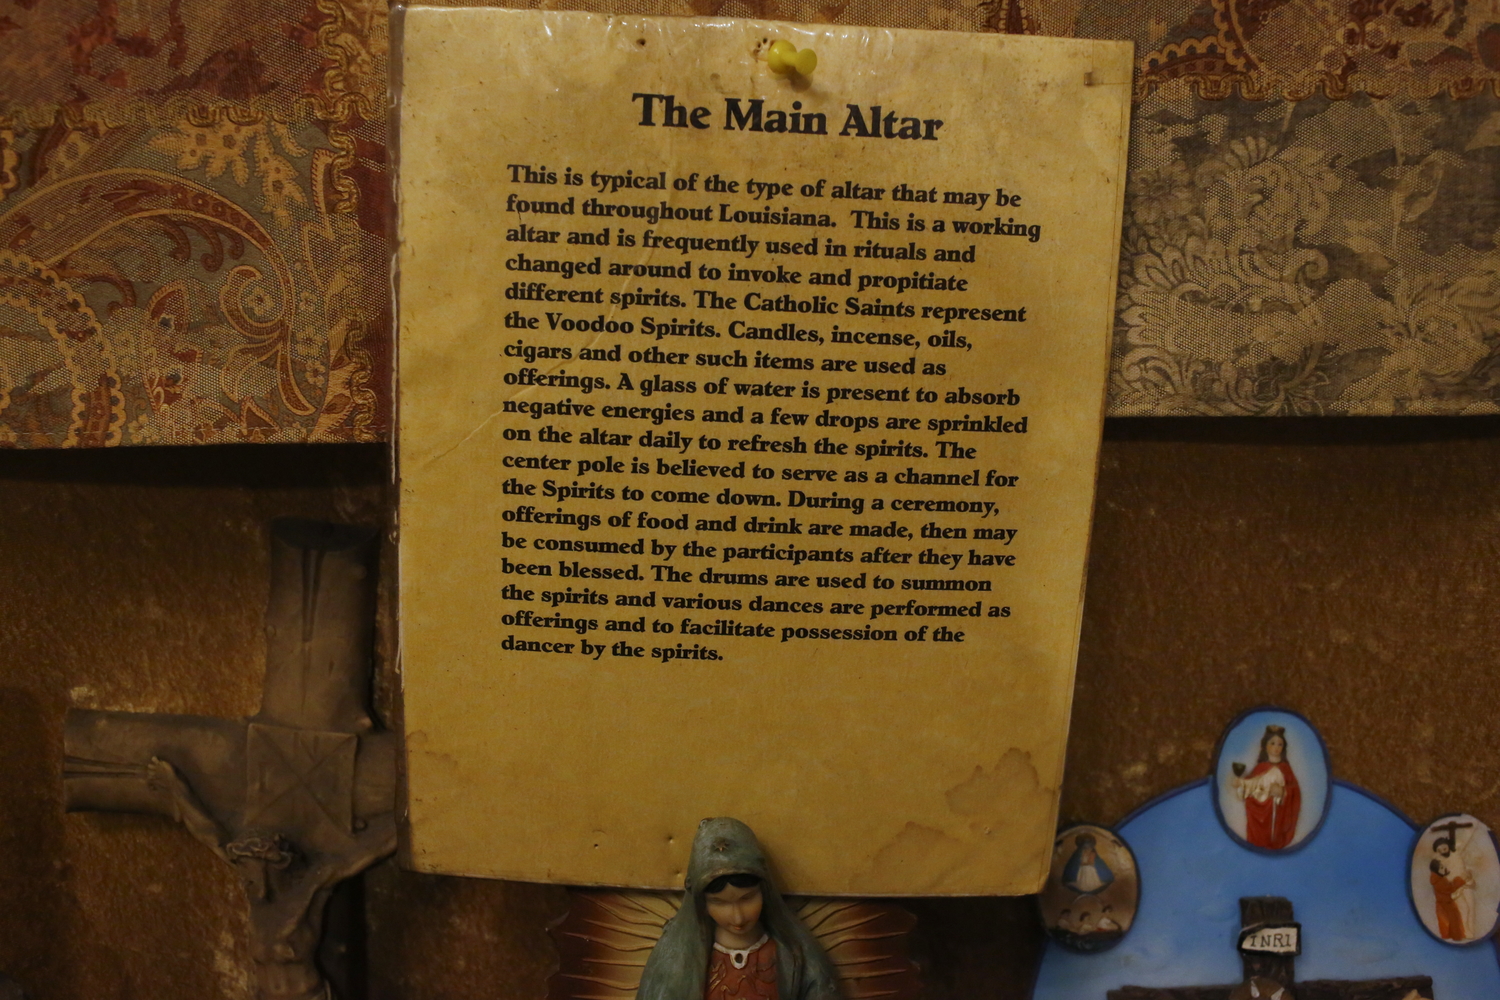 Au musée du vaudou : explications sur l’autel vaudou © Globe Reporters 